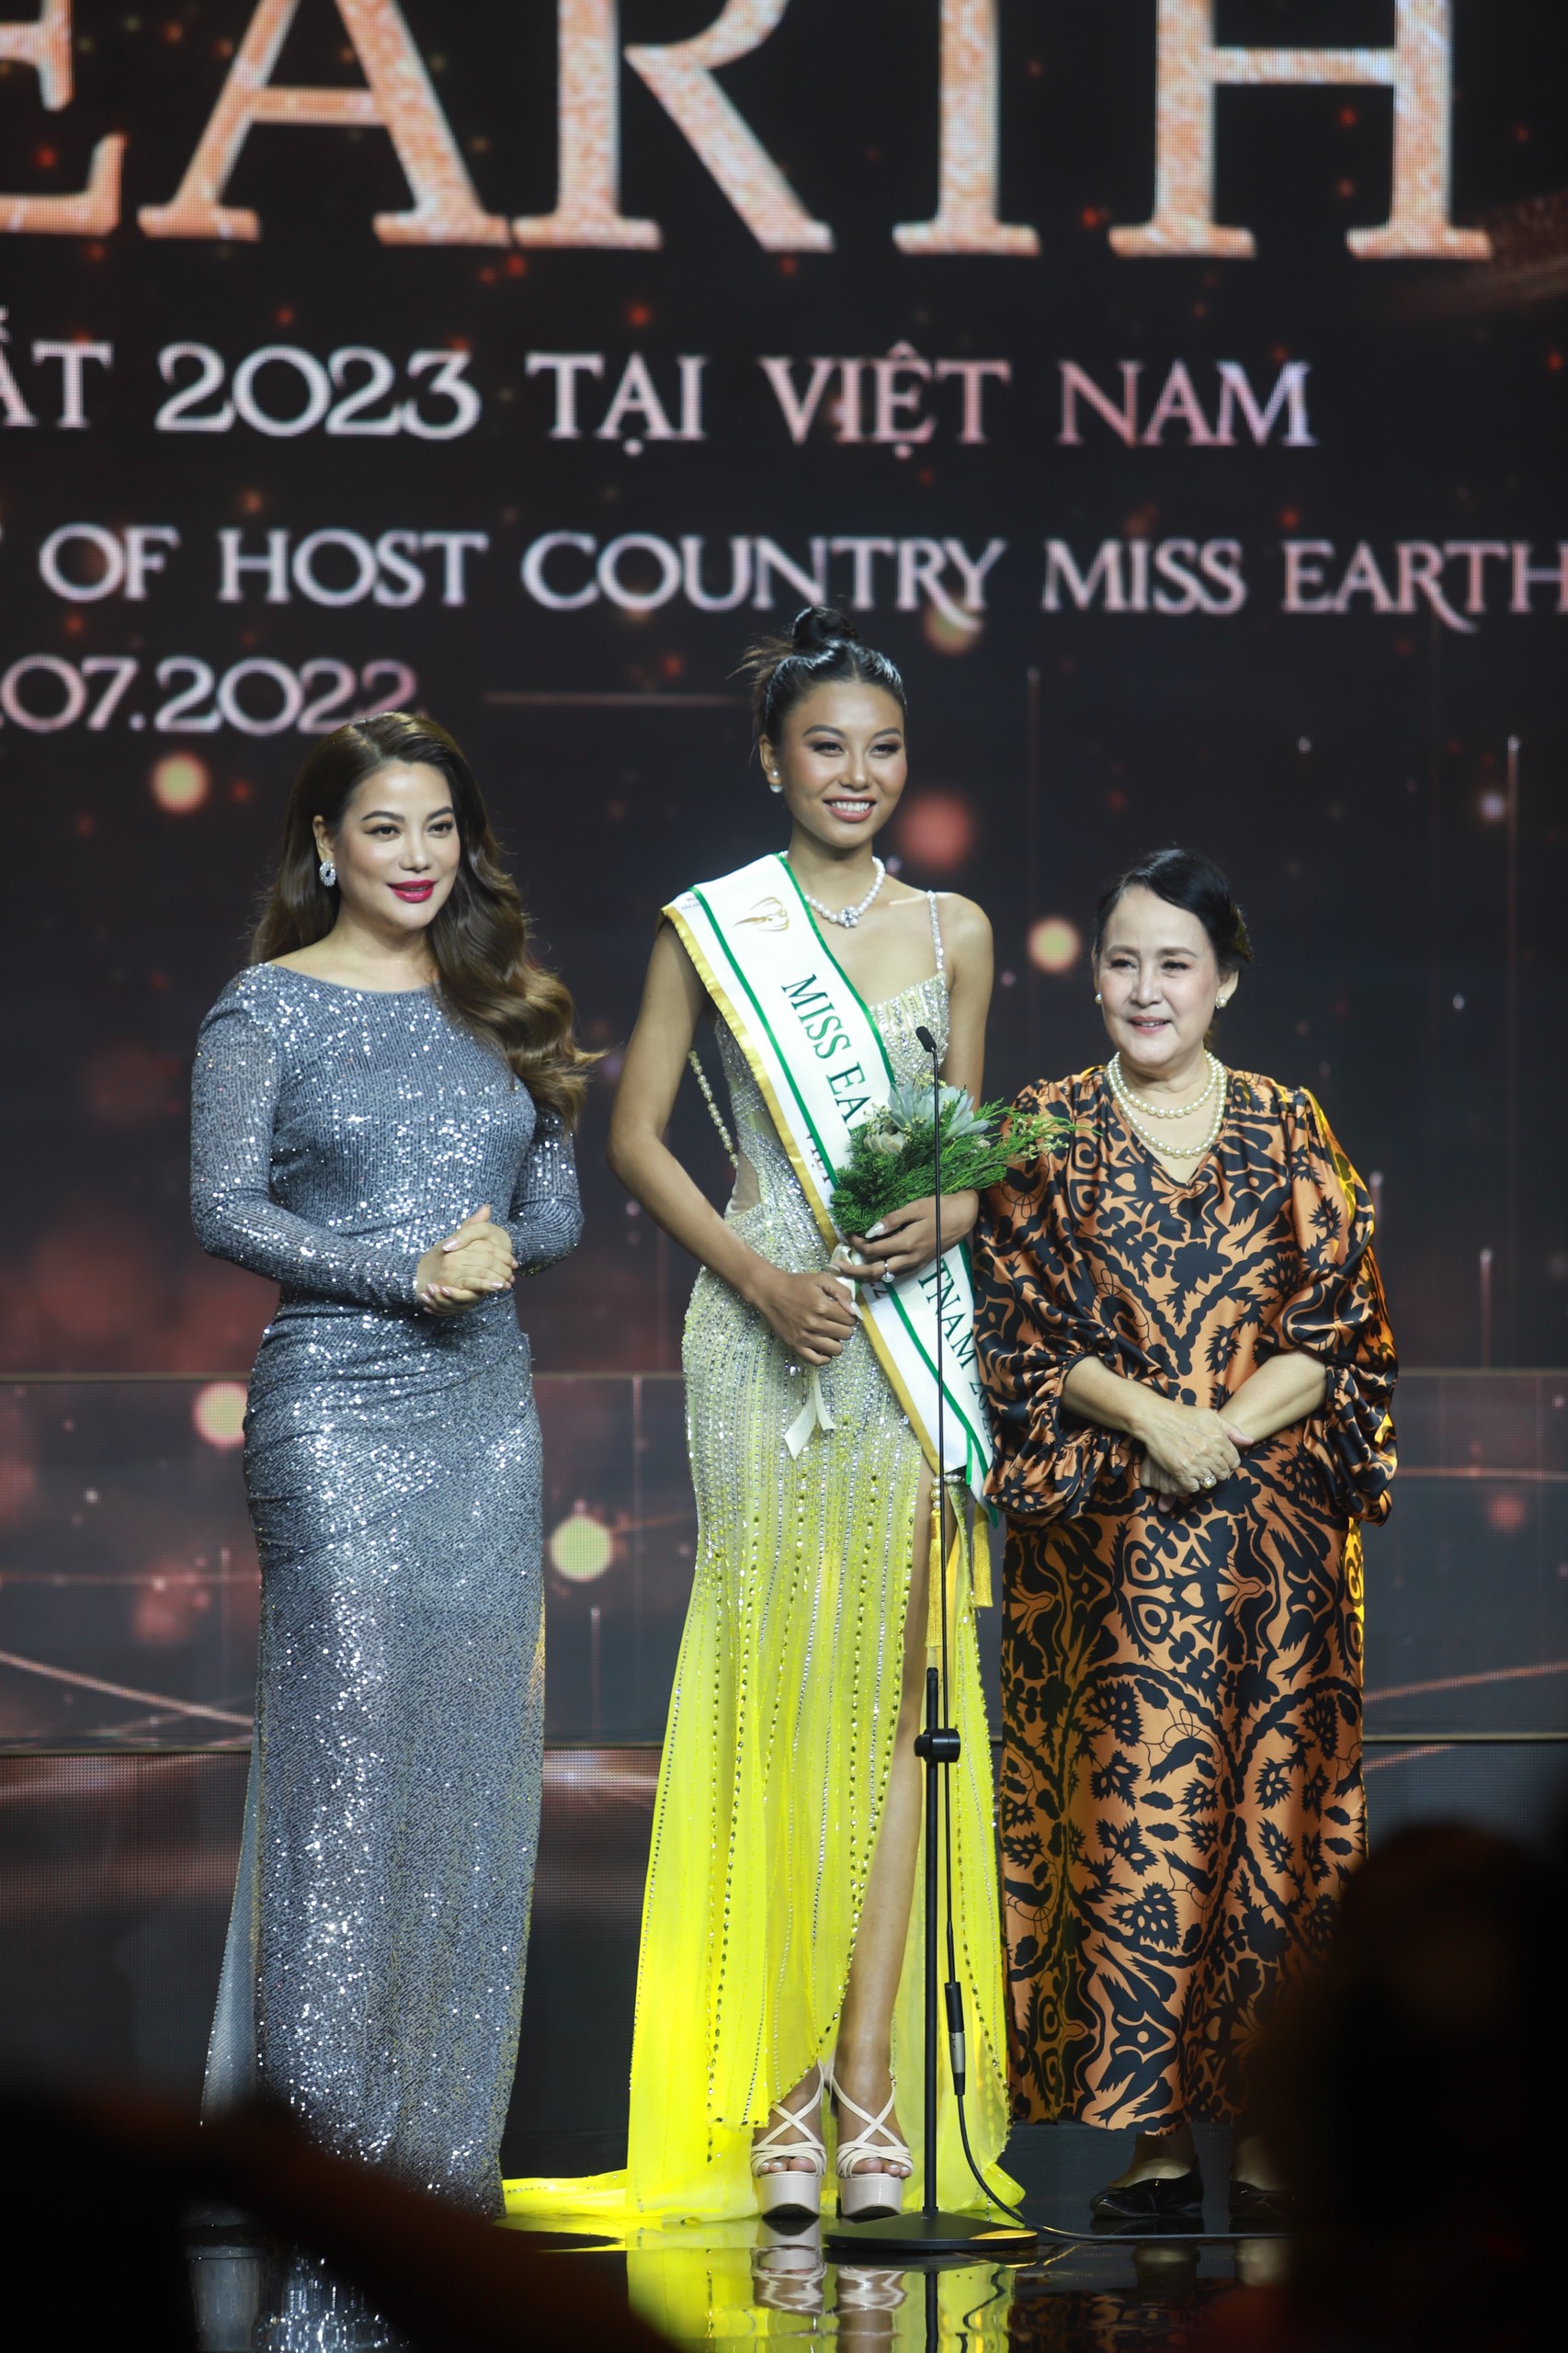 Sự kiện tâm điểm Vbiz hôm nay: Hoa hậu Nông Thúy Hằng mất quyền thi quốc tế, Á hậu 2 đại diện Việt Nam thi Miss Earth - Ảnh 13.